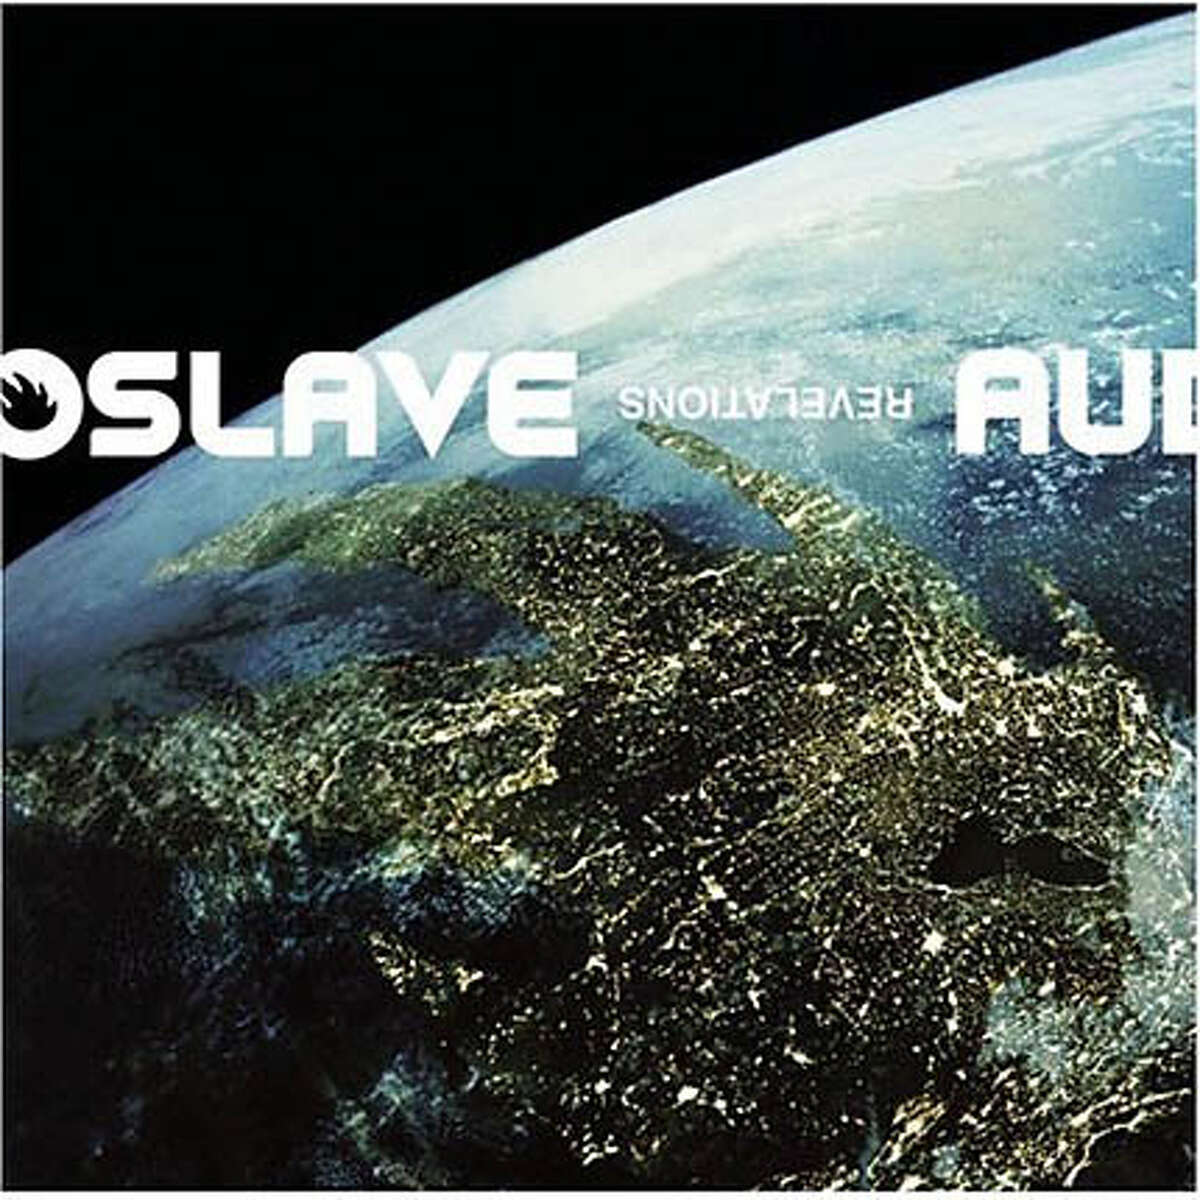 Audioslave's "Revelations"